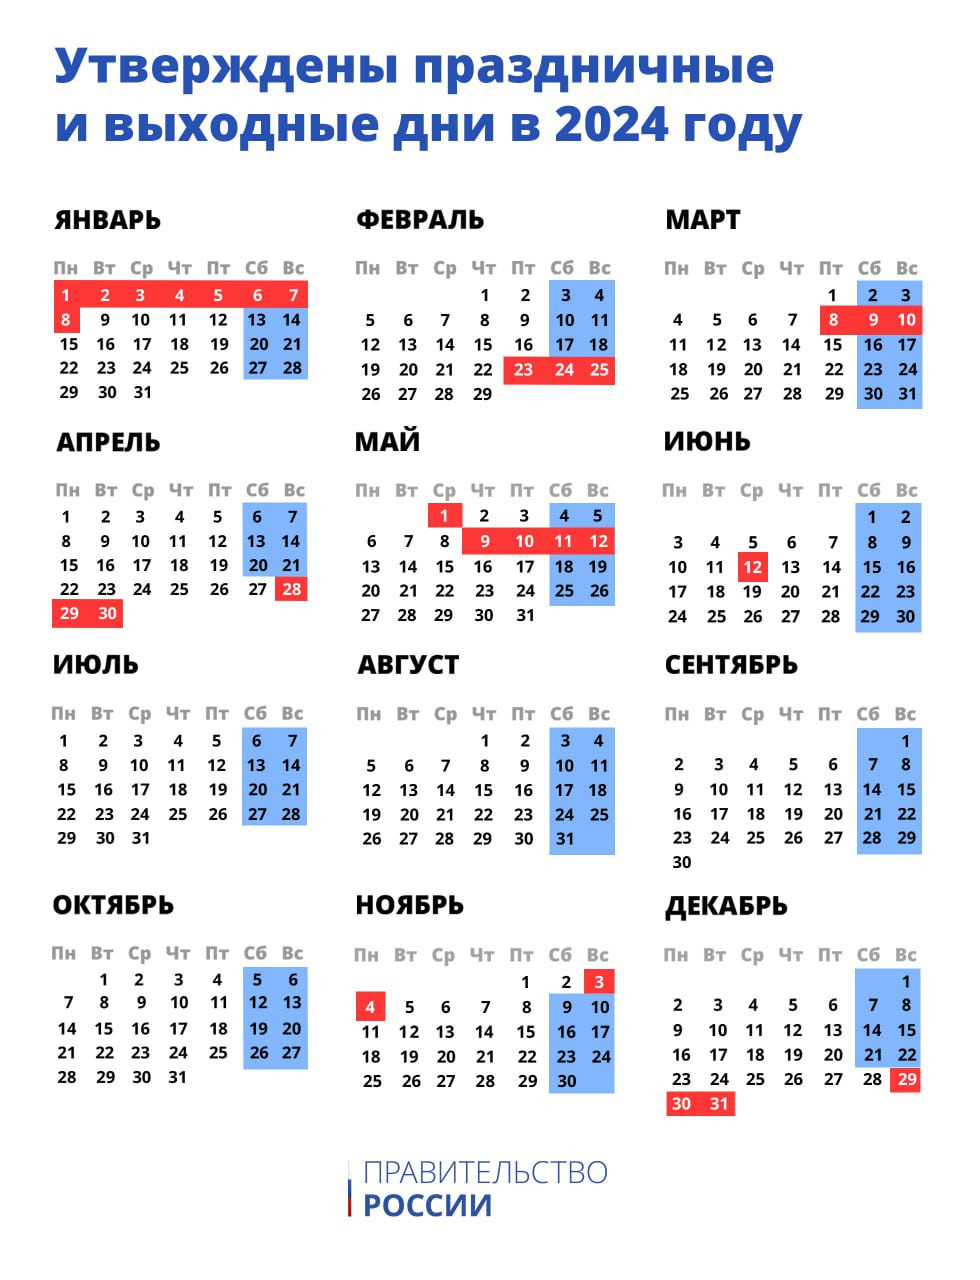 Праздники в мае нерабочие дни. Календарь праздничных и выходных дней на 2023 год. Праздничные дни в январе 2023 года в России календарь. Календарь праздников 2023 года в России нерабочие. Праздничные и выходные в 2023 году России календарь.